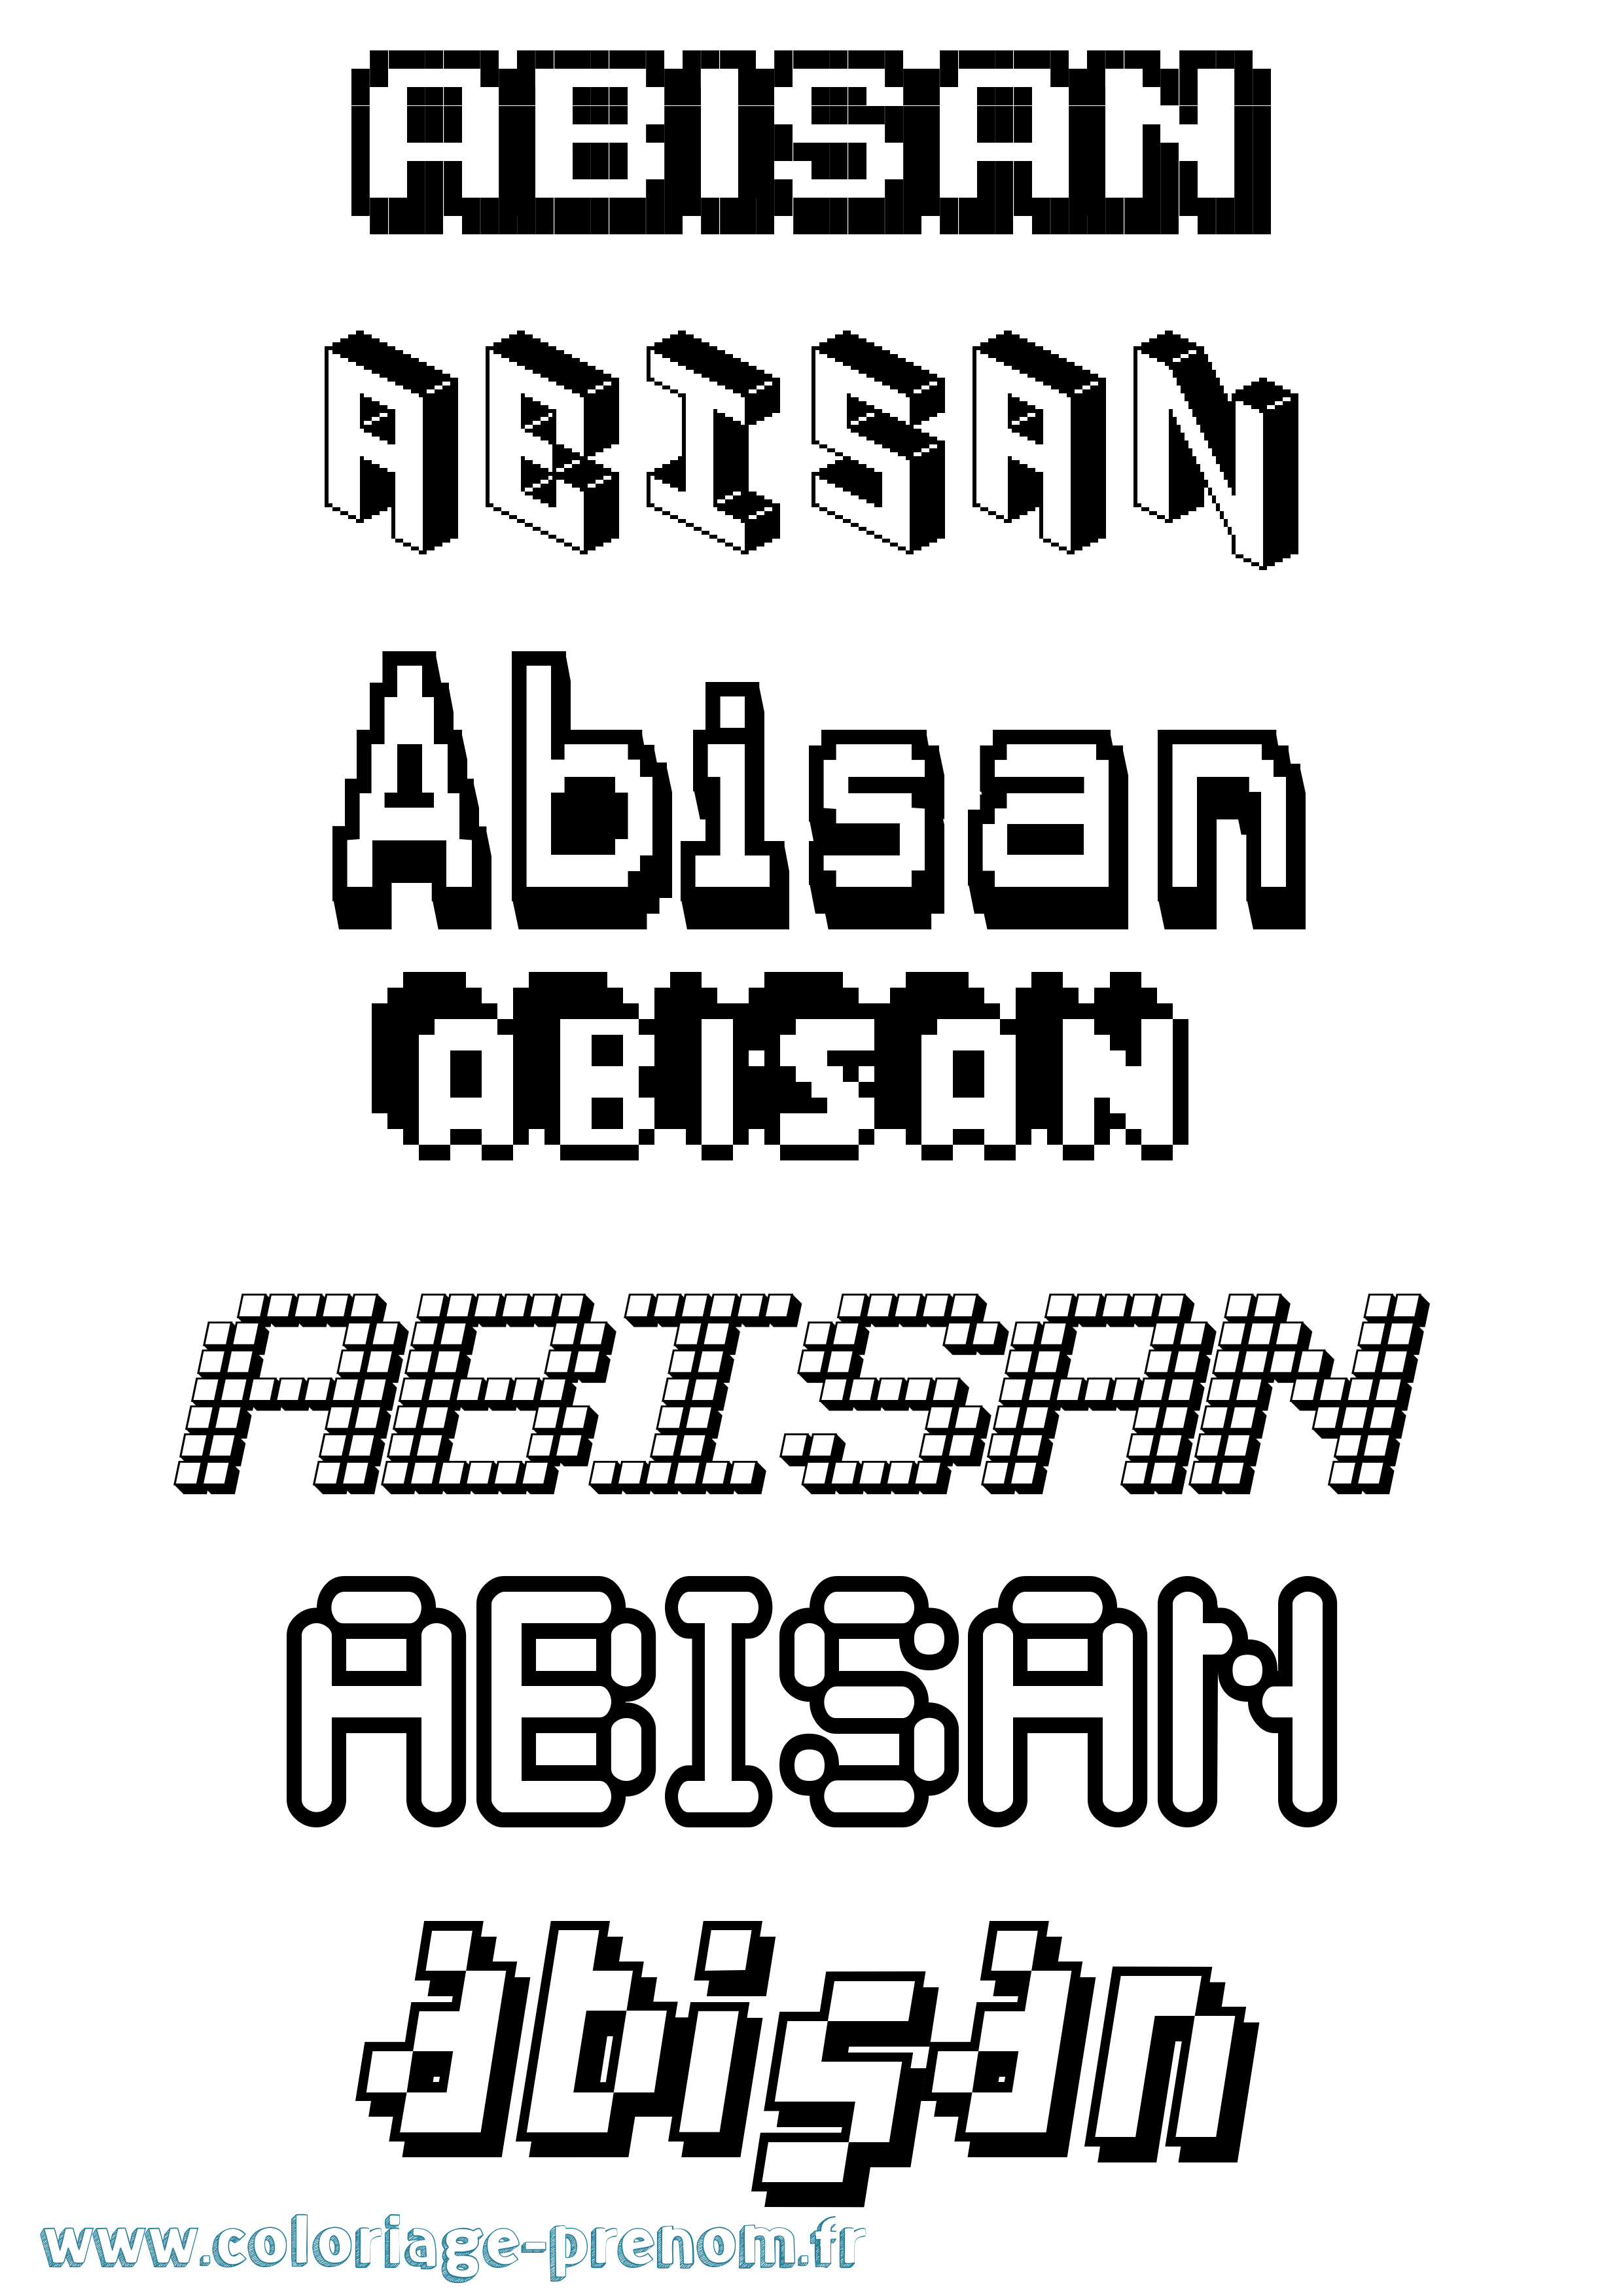 Coloriage prénom Abisan Pixel